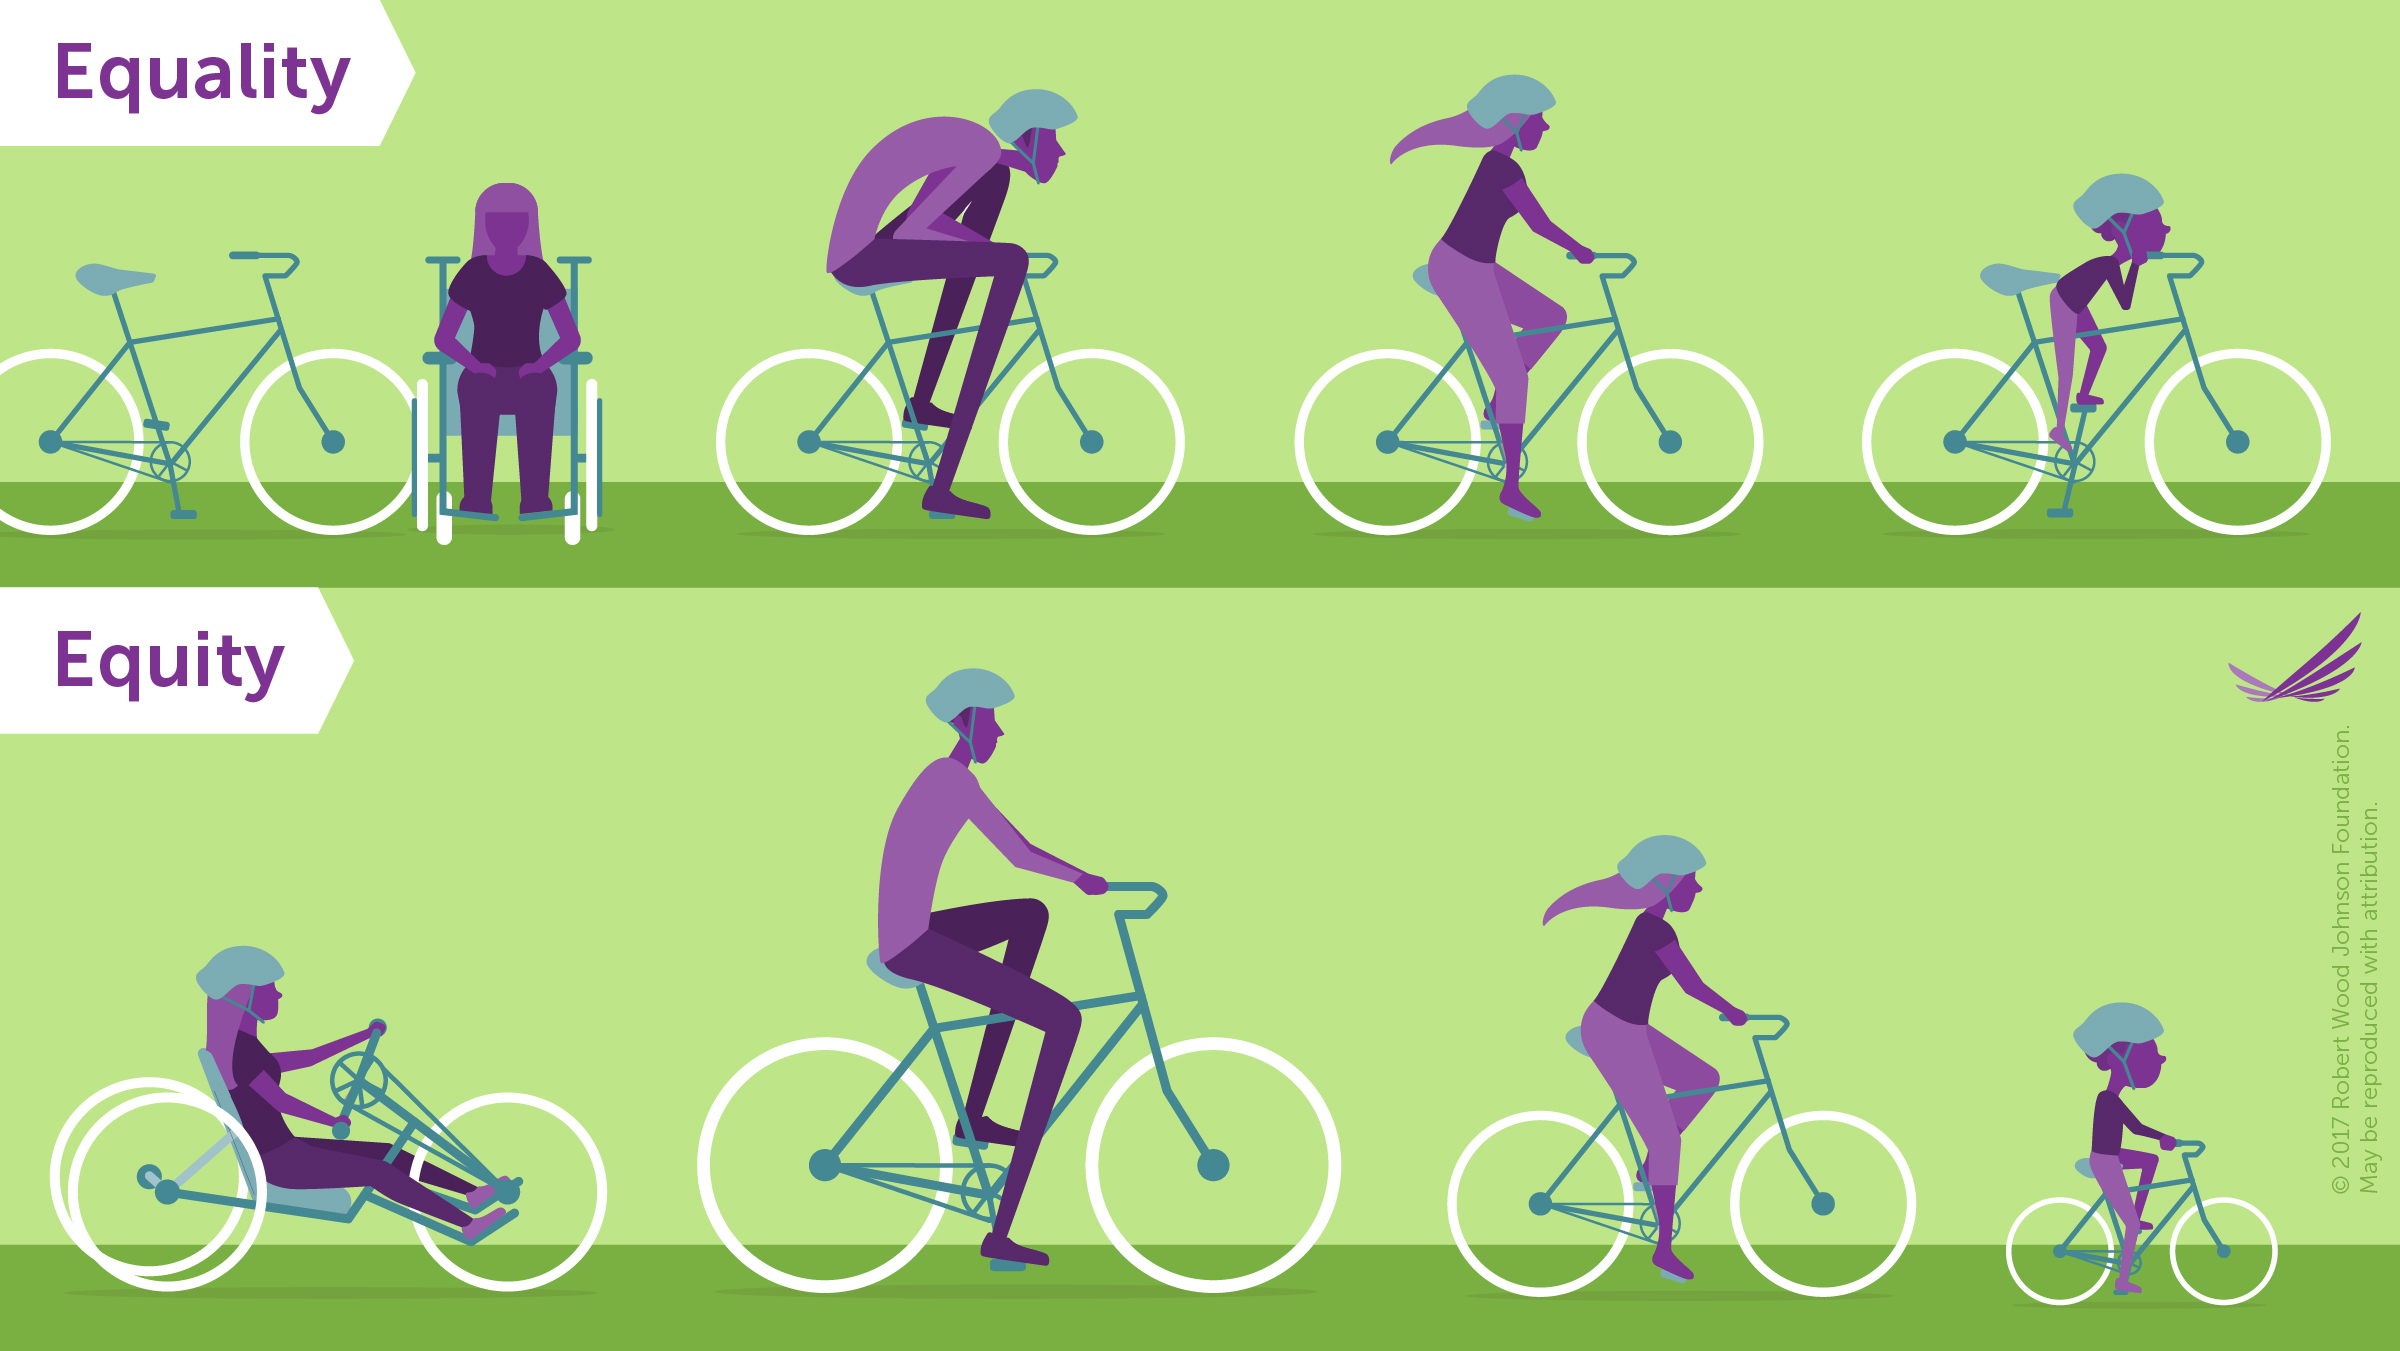 Imagem de bicicletas mostrando a diferença entre equidade e igualdade